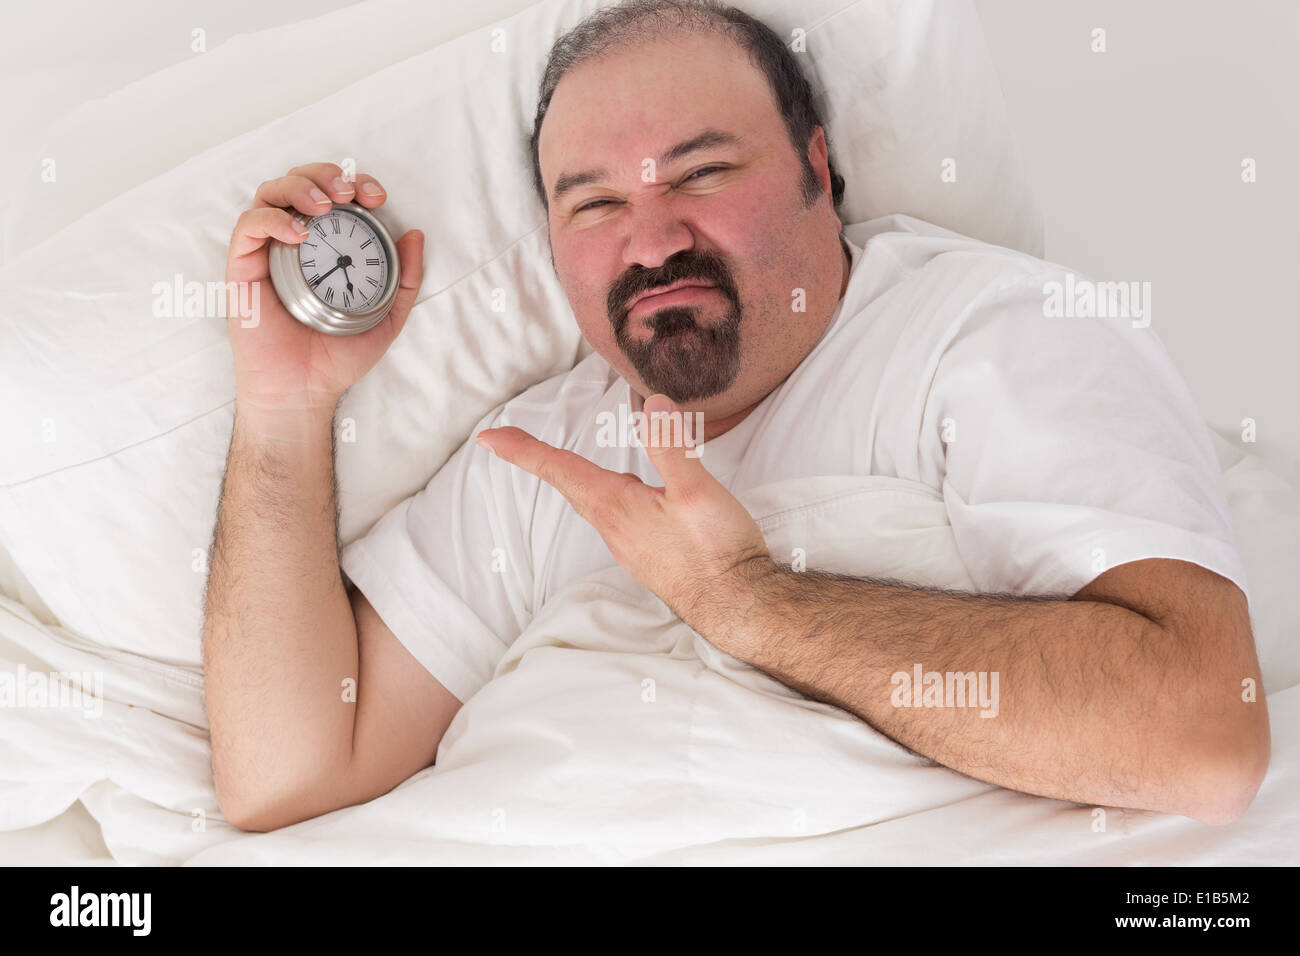 Homme barbu d'âge moyen maintenu éveillé par des voisins bruyants au lit des grimaces et pointant vers l'heure sur son réveil Banque D'Images